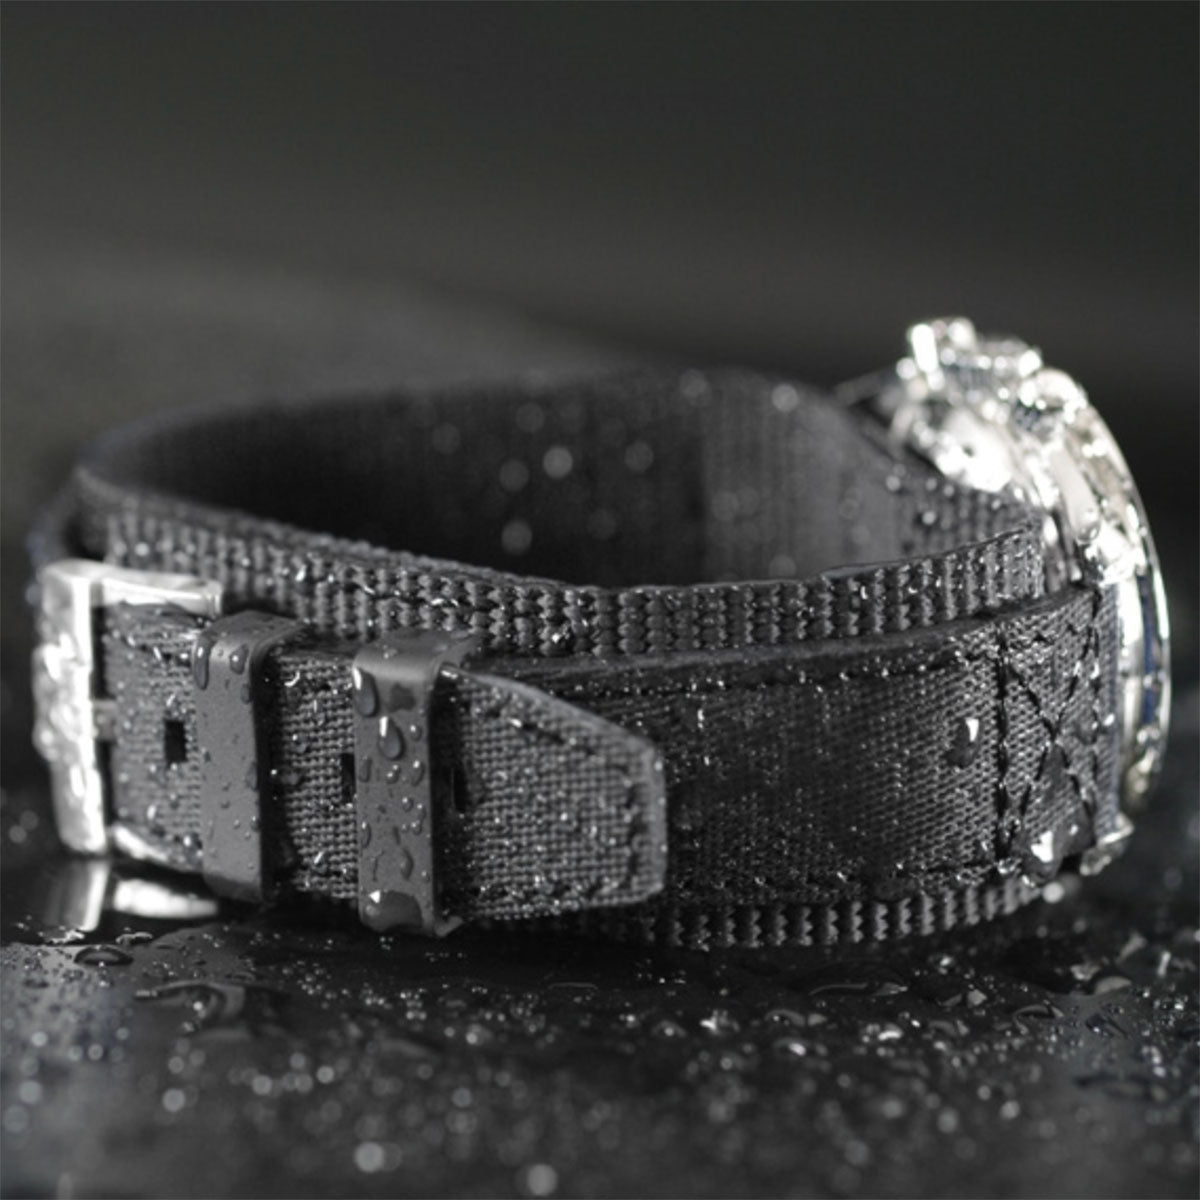 Rolex - Rubber B - Bracelet caoutchouc pour Deepsea - Série Bund - watch band leather strap - ABP Concept -